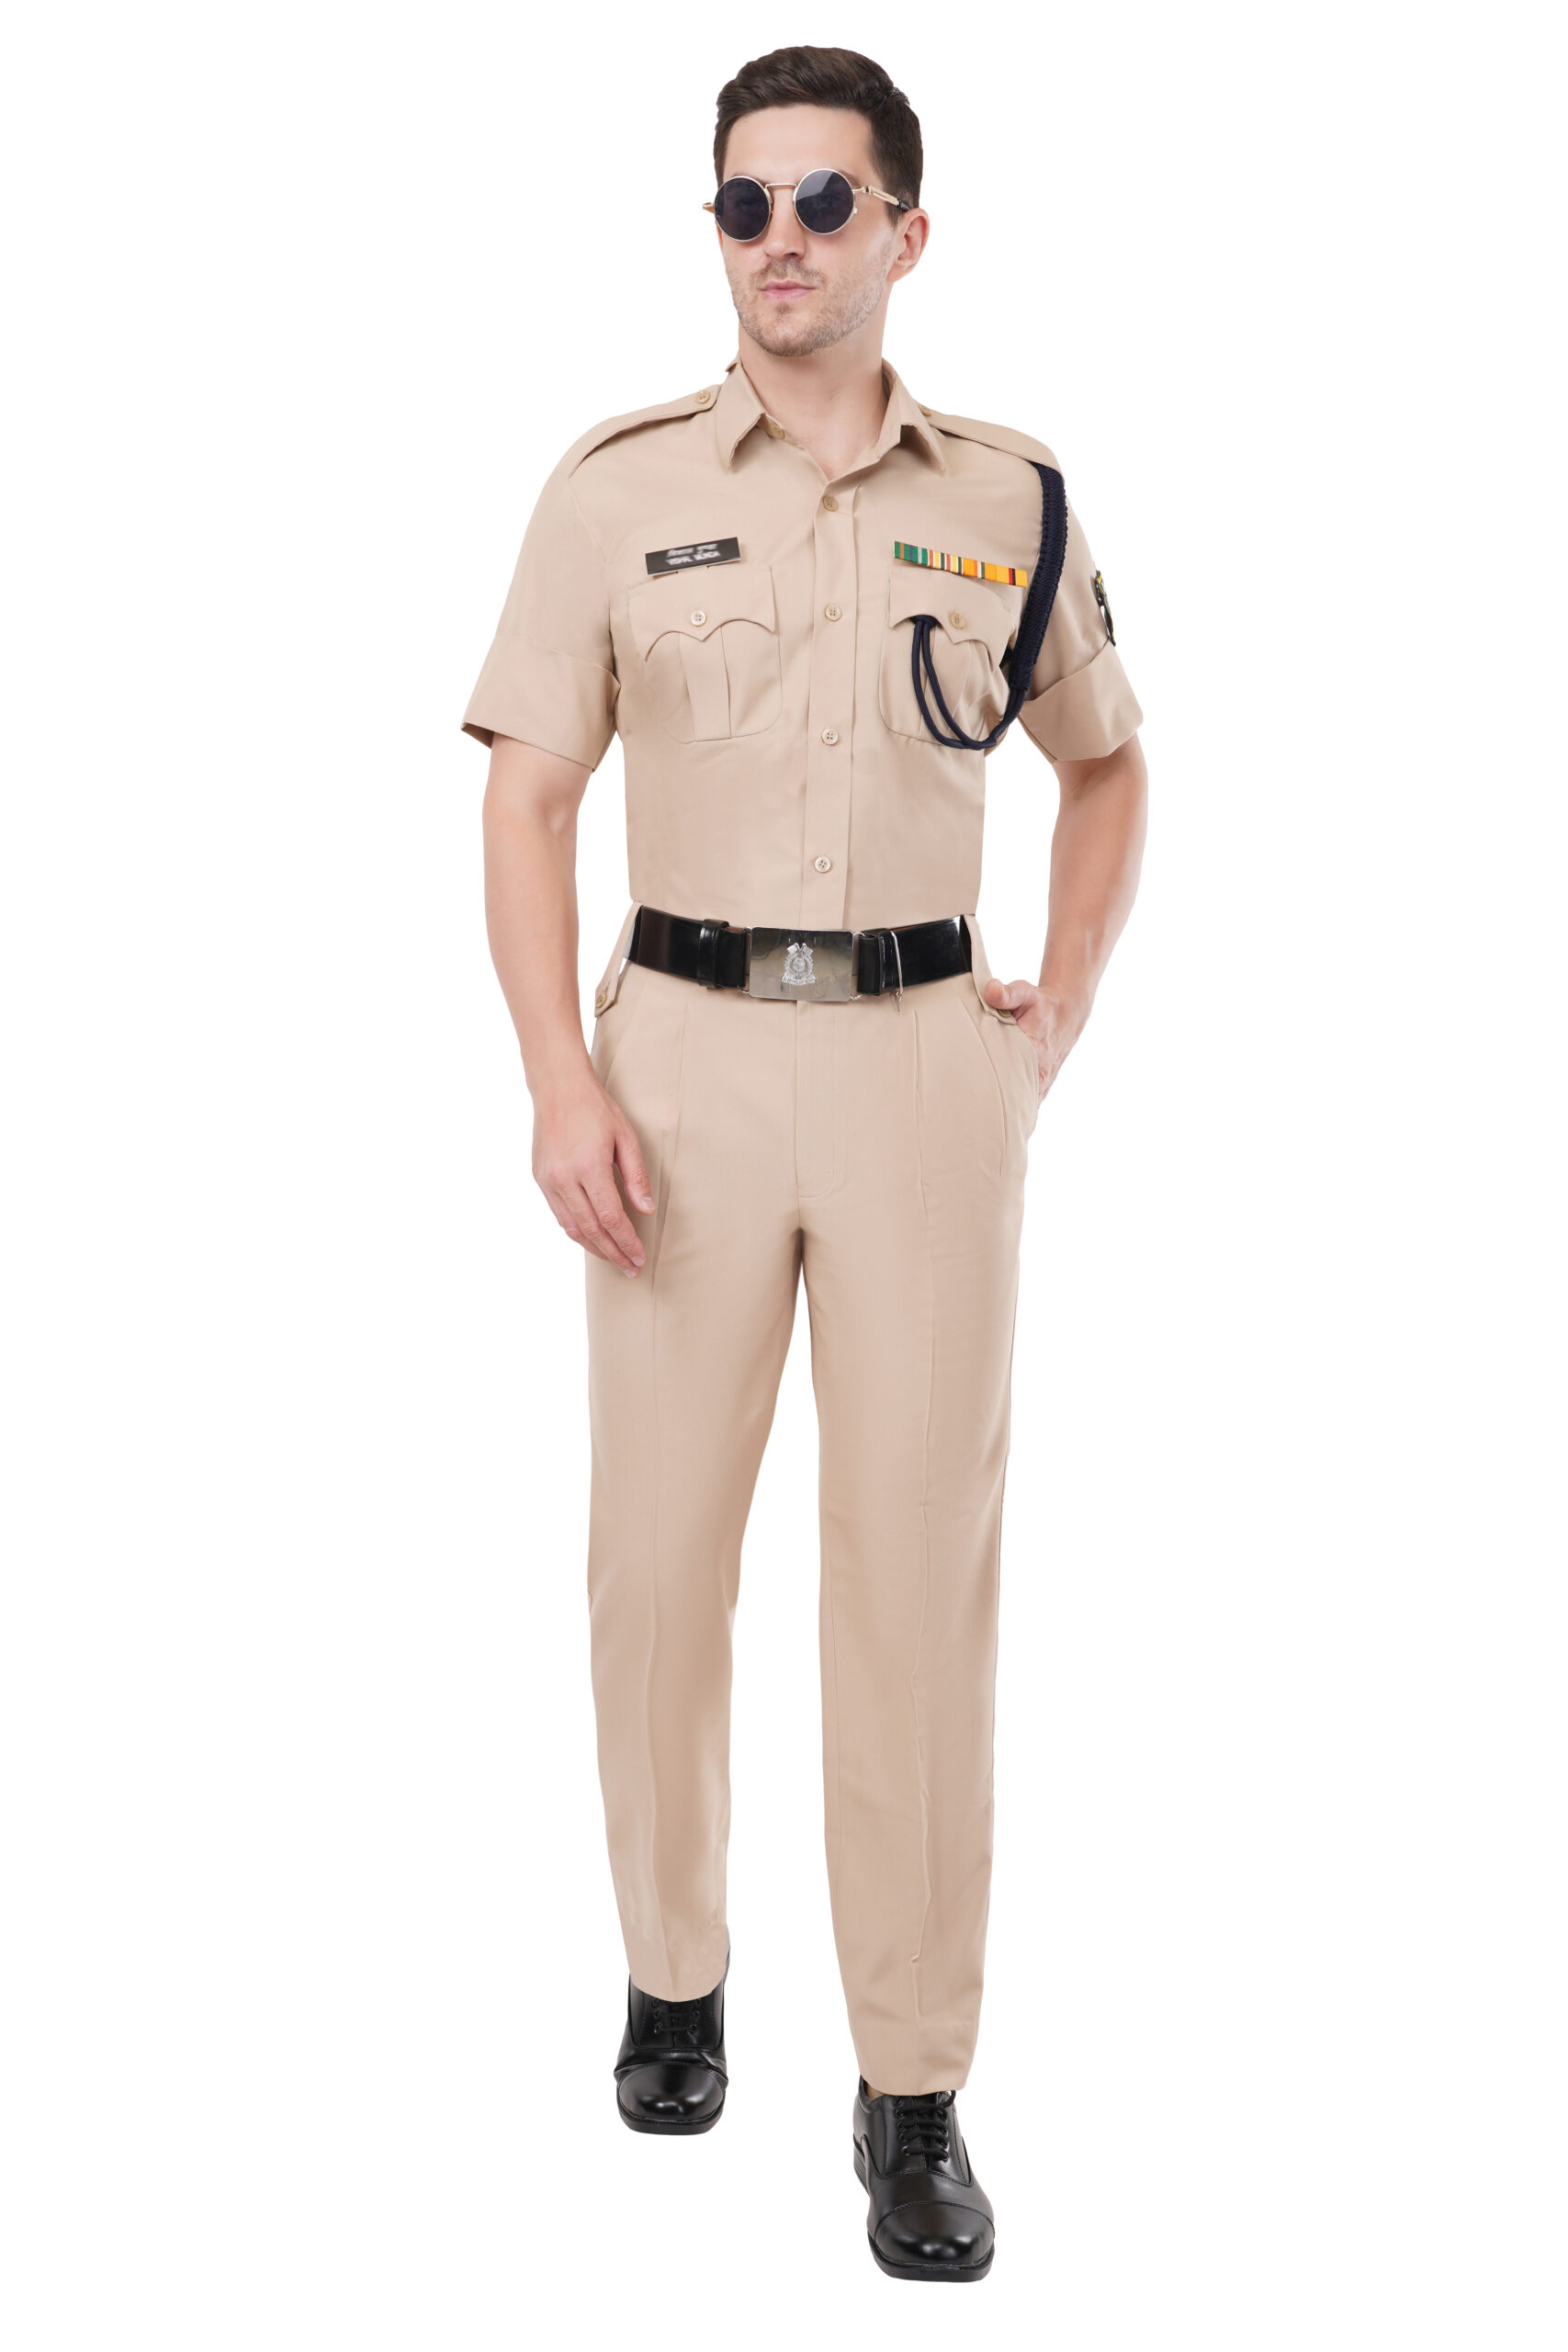 SSB Khaki Uniform